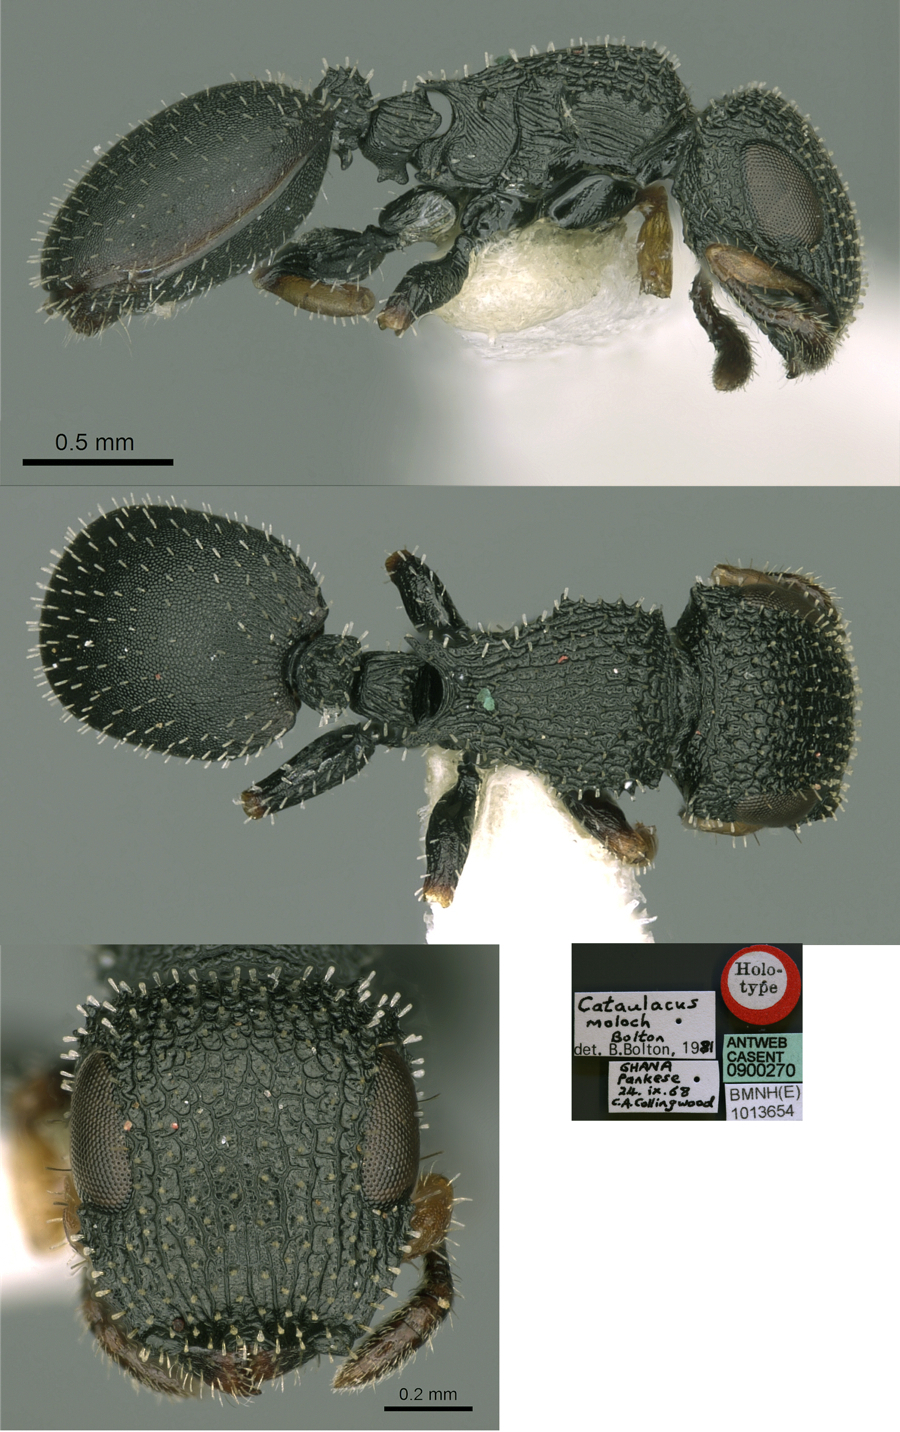 Cataulacus moloch